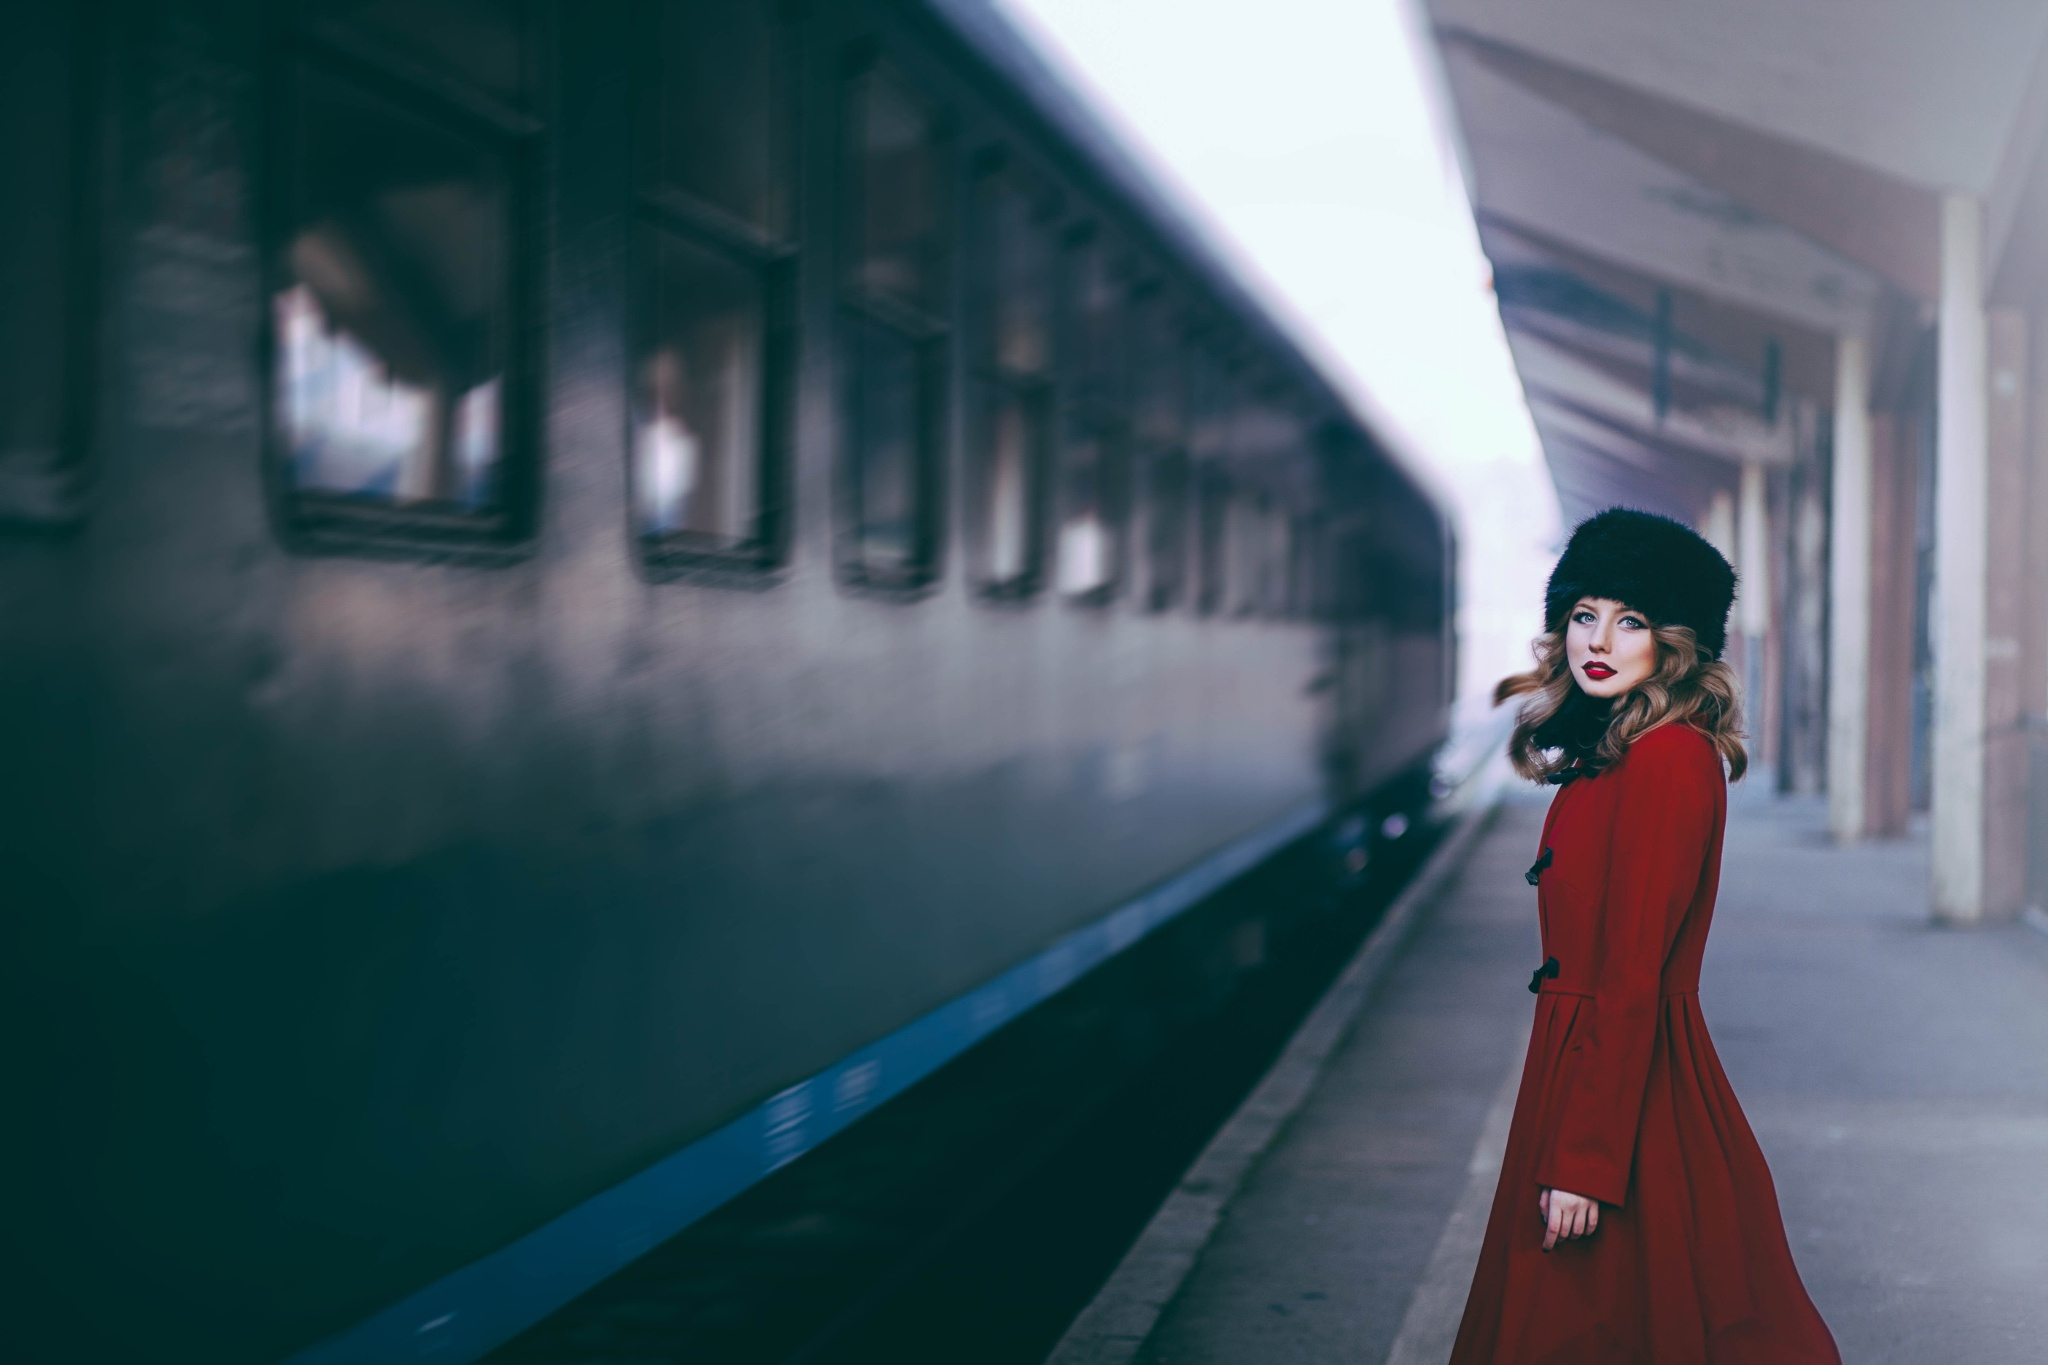 Catch the train by Maja Topčagić